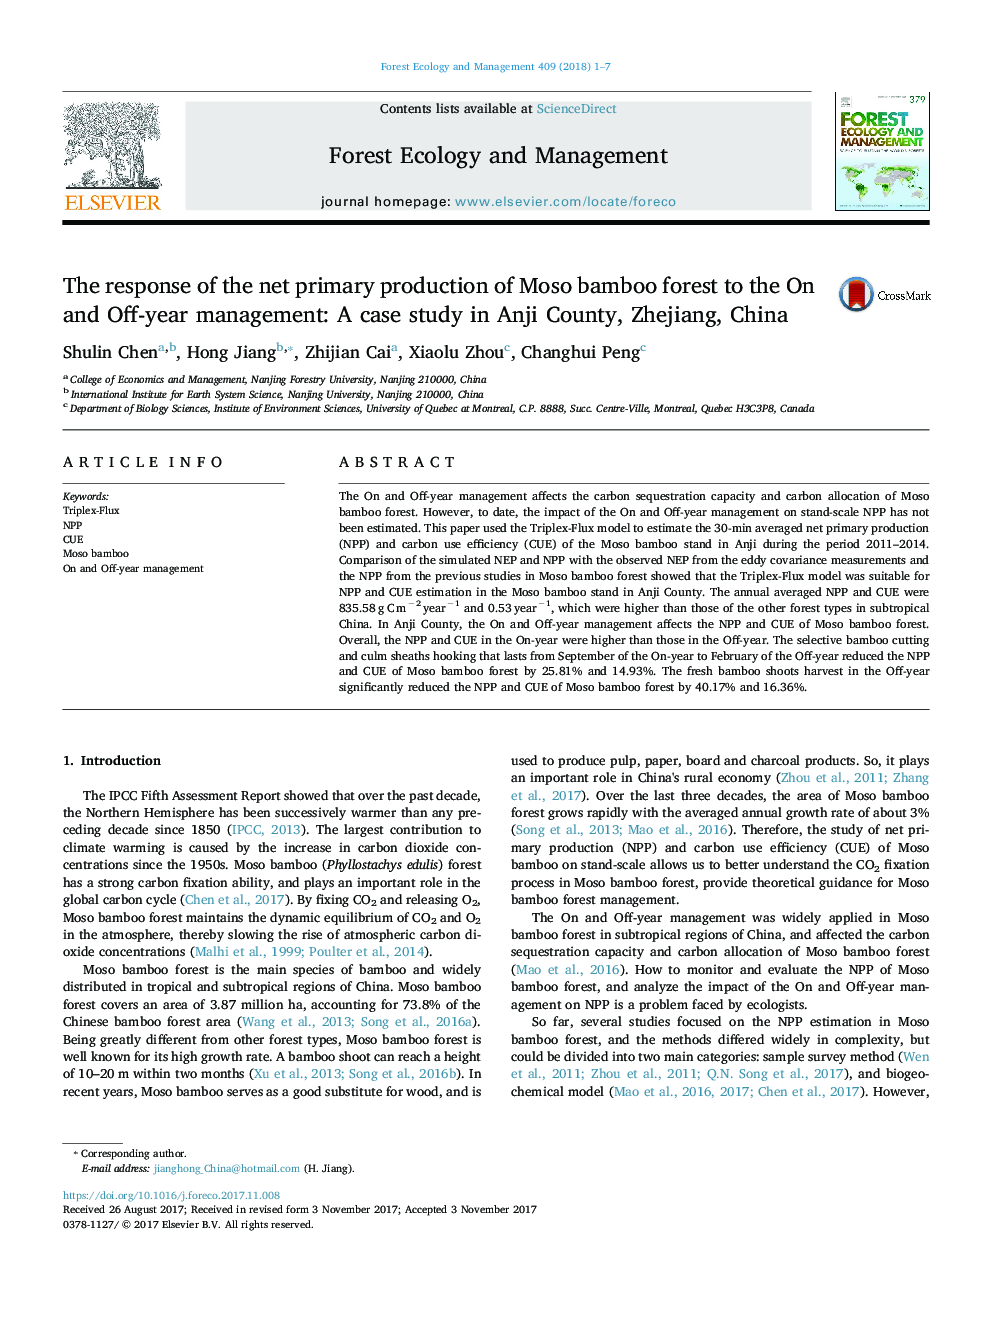 پاسخ اولیه تولید خالص جنگل های مصنوعی بامبو به مدیریت سالانه و سالانه: مطالعه موردی در شهرستان آنجی، ژجیانگ، چین 